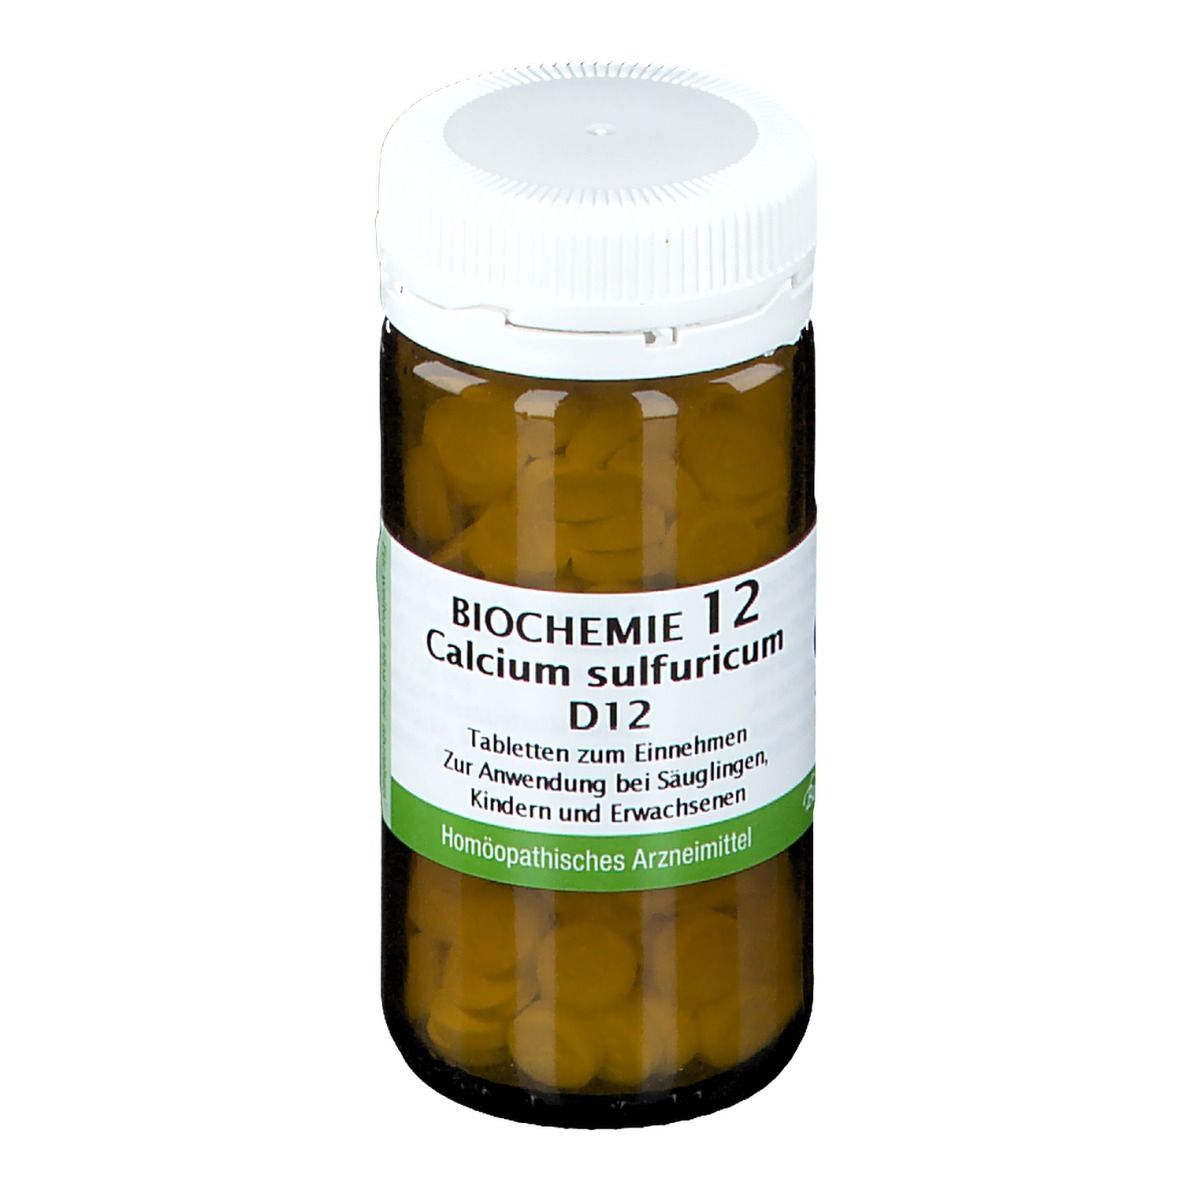 Biochemie 12 Calcium sulfuricum D 12